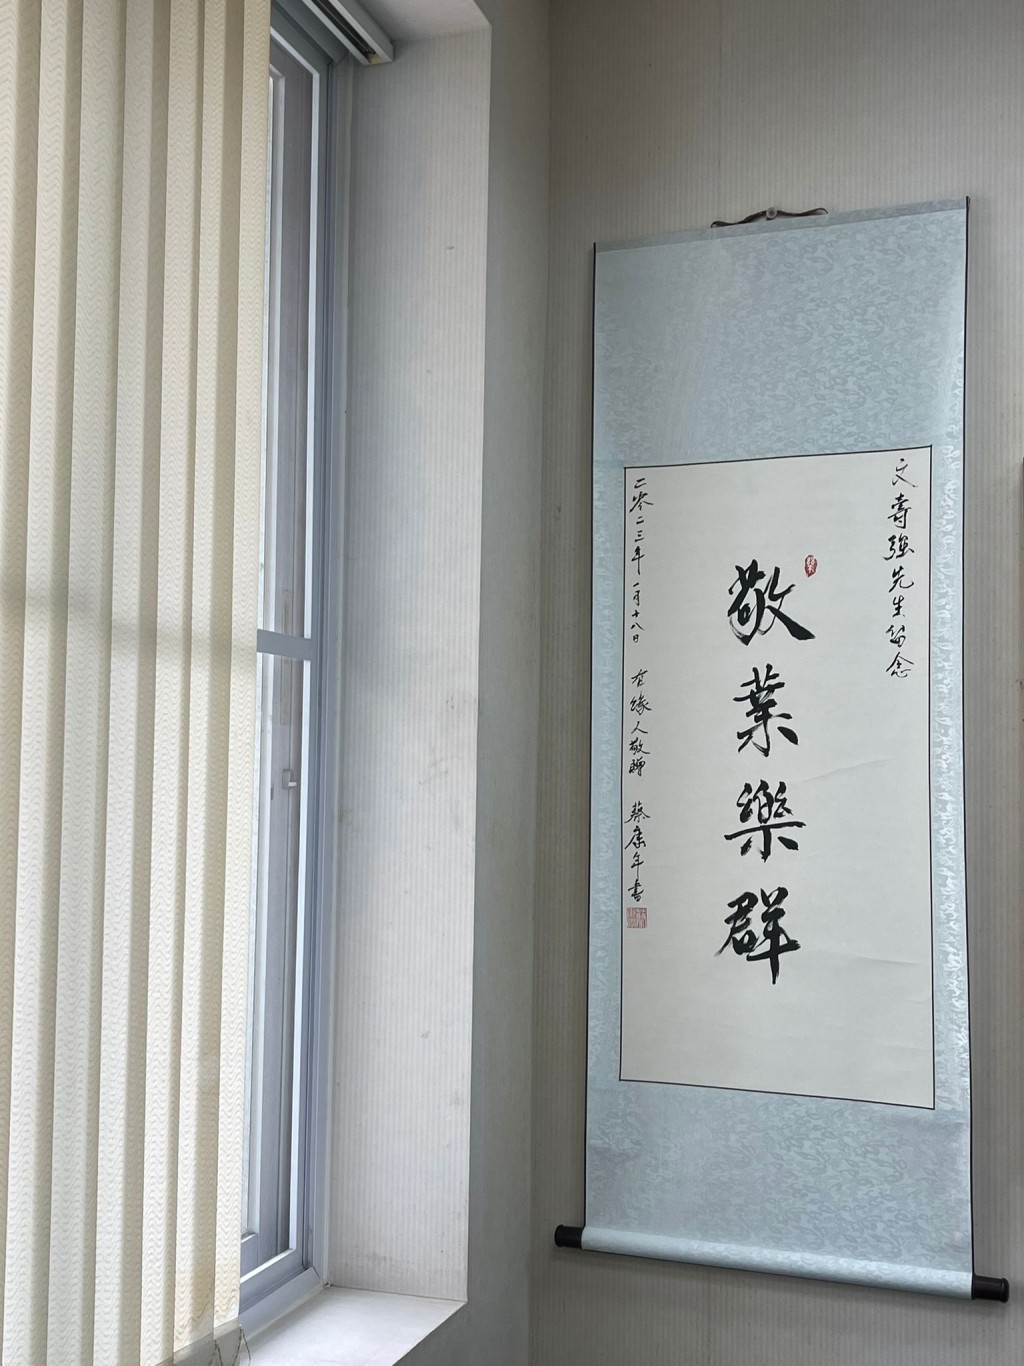 文壽強把蔡校長送贈的書法題字掛在公司的牆上。